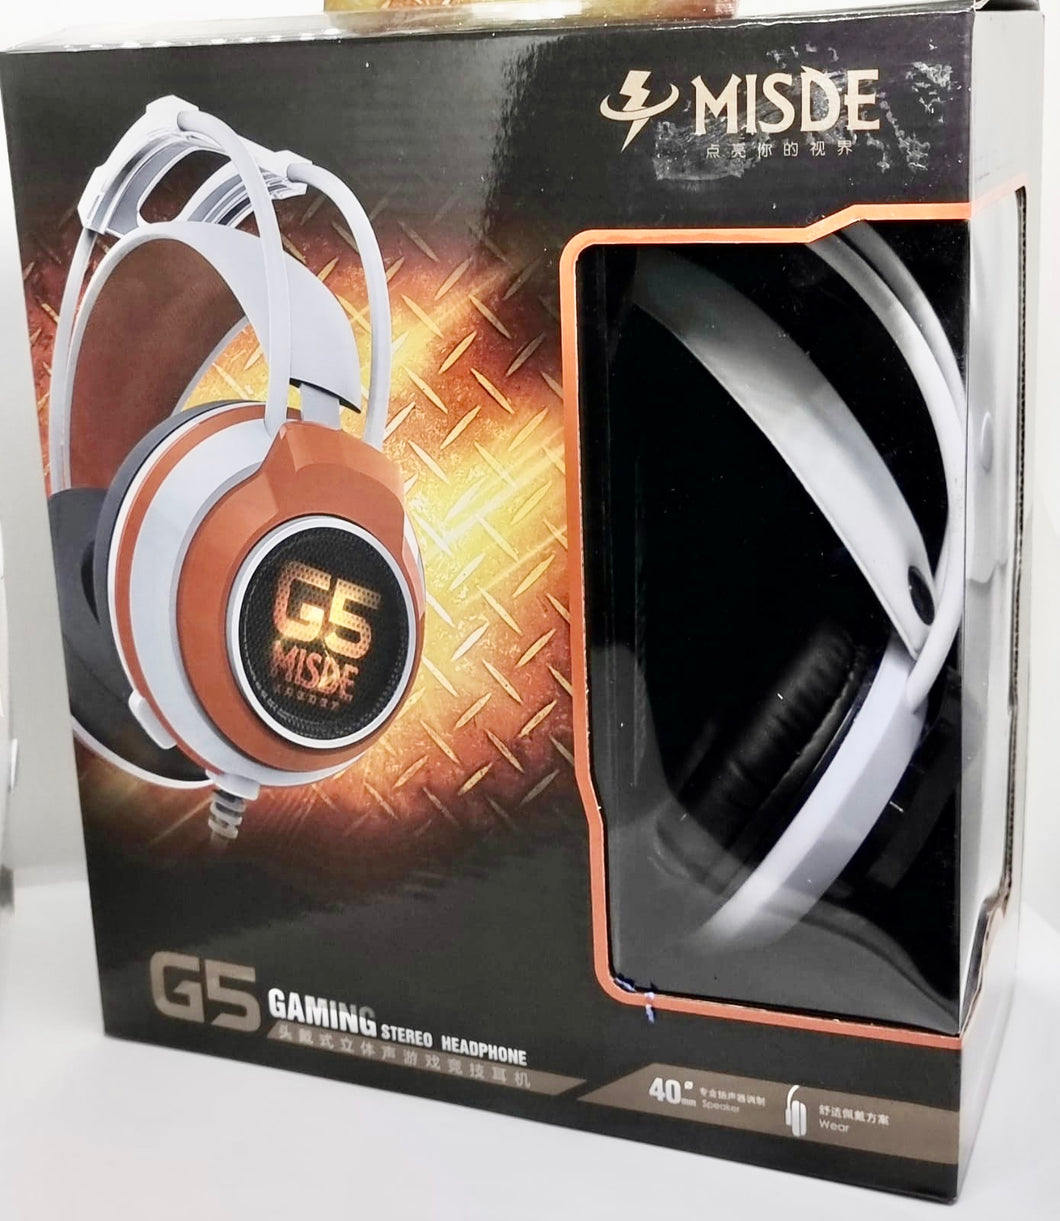 G5 Gaming headset (white & orange)